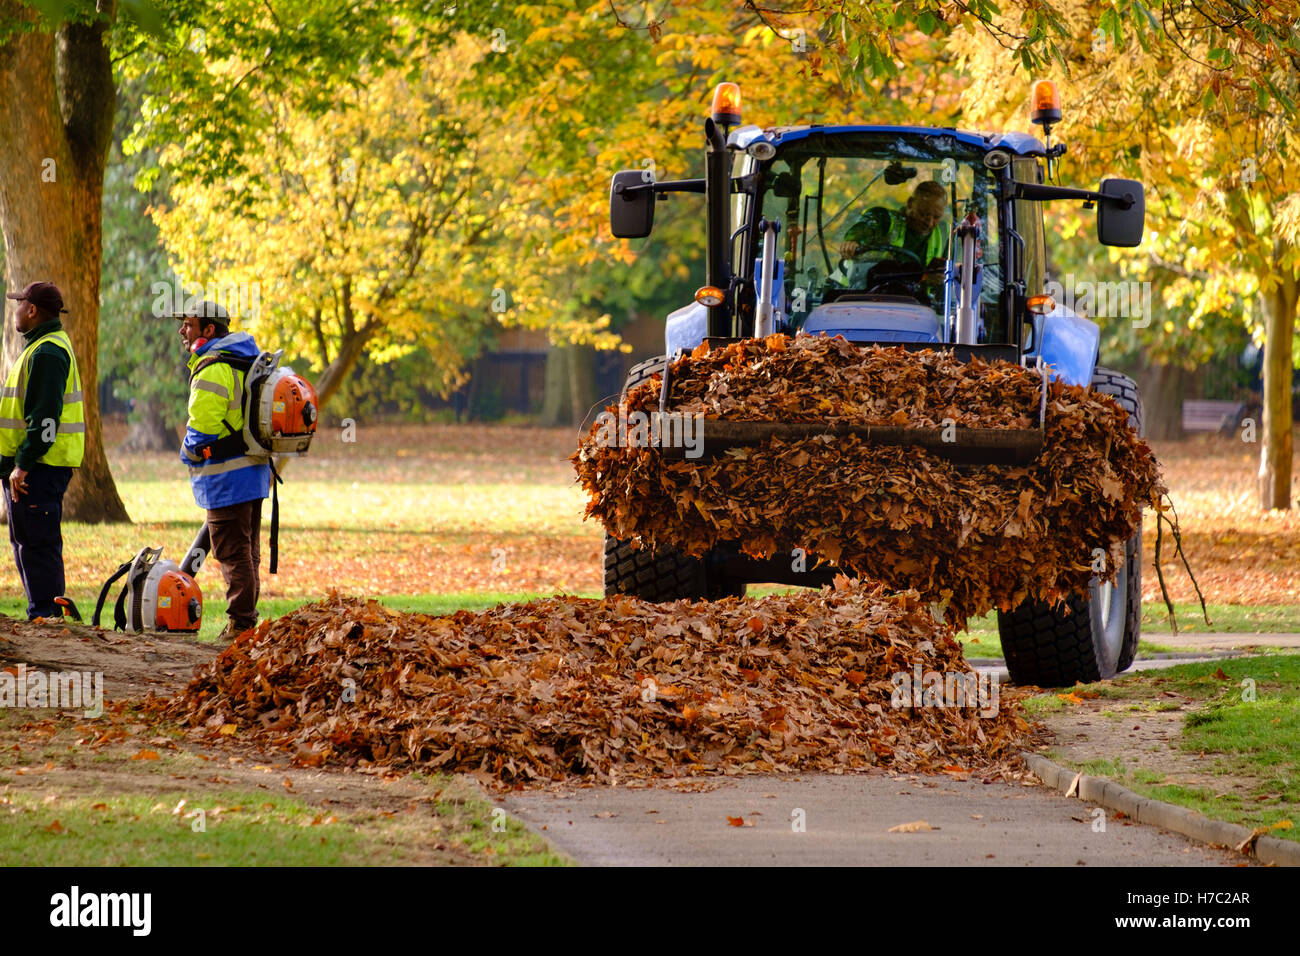 ein Traktor sammelt Haufen von Herbstlaub Stützbeine, Victoria Park, East London, UK Stockfoto